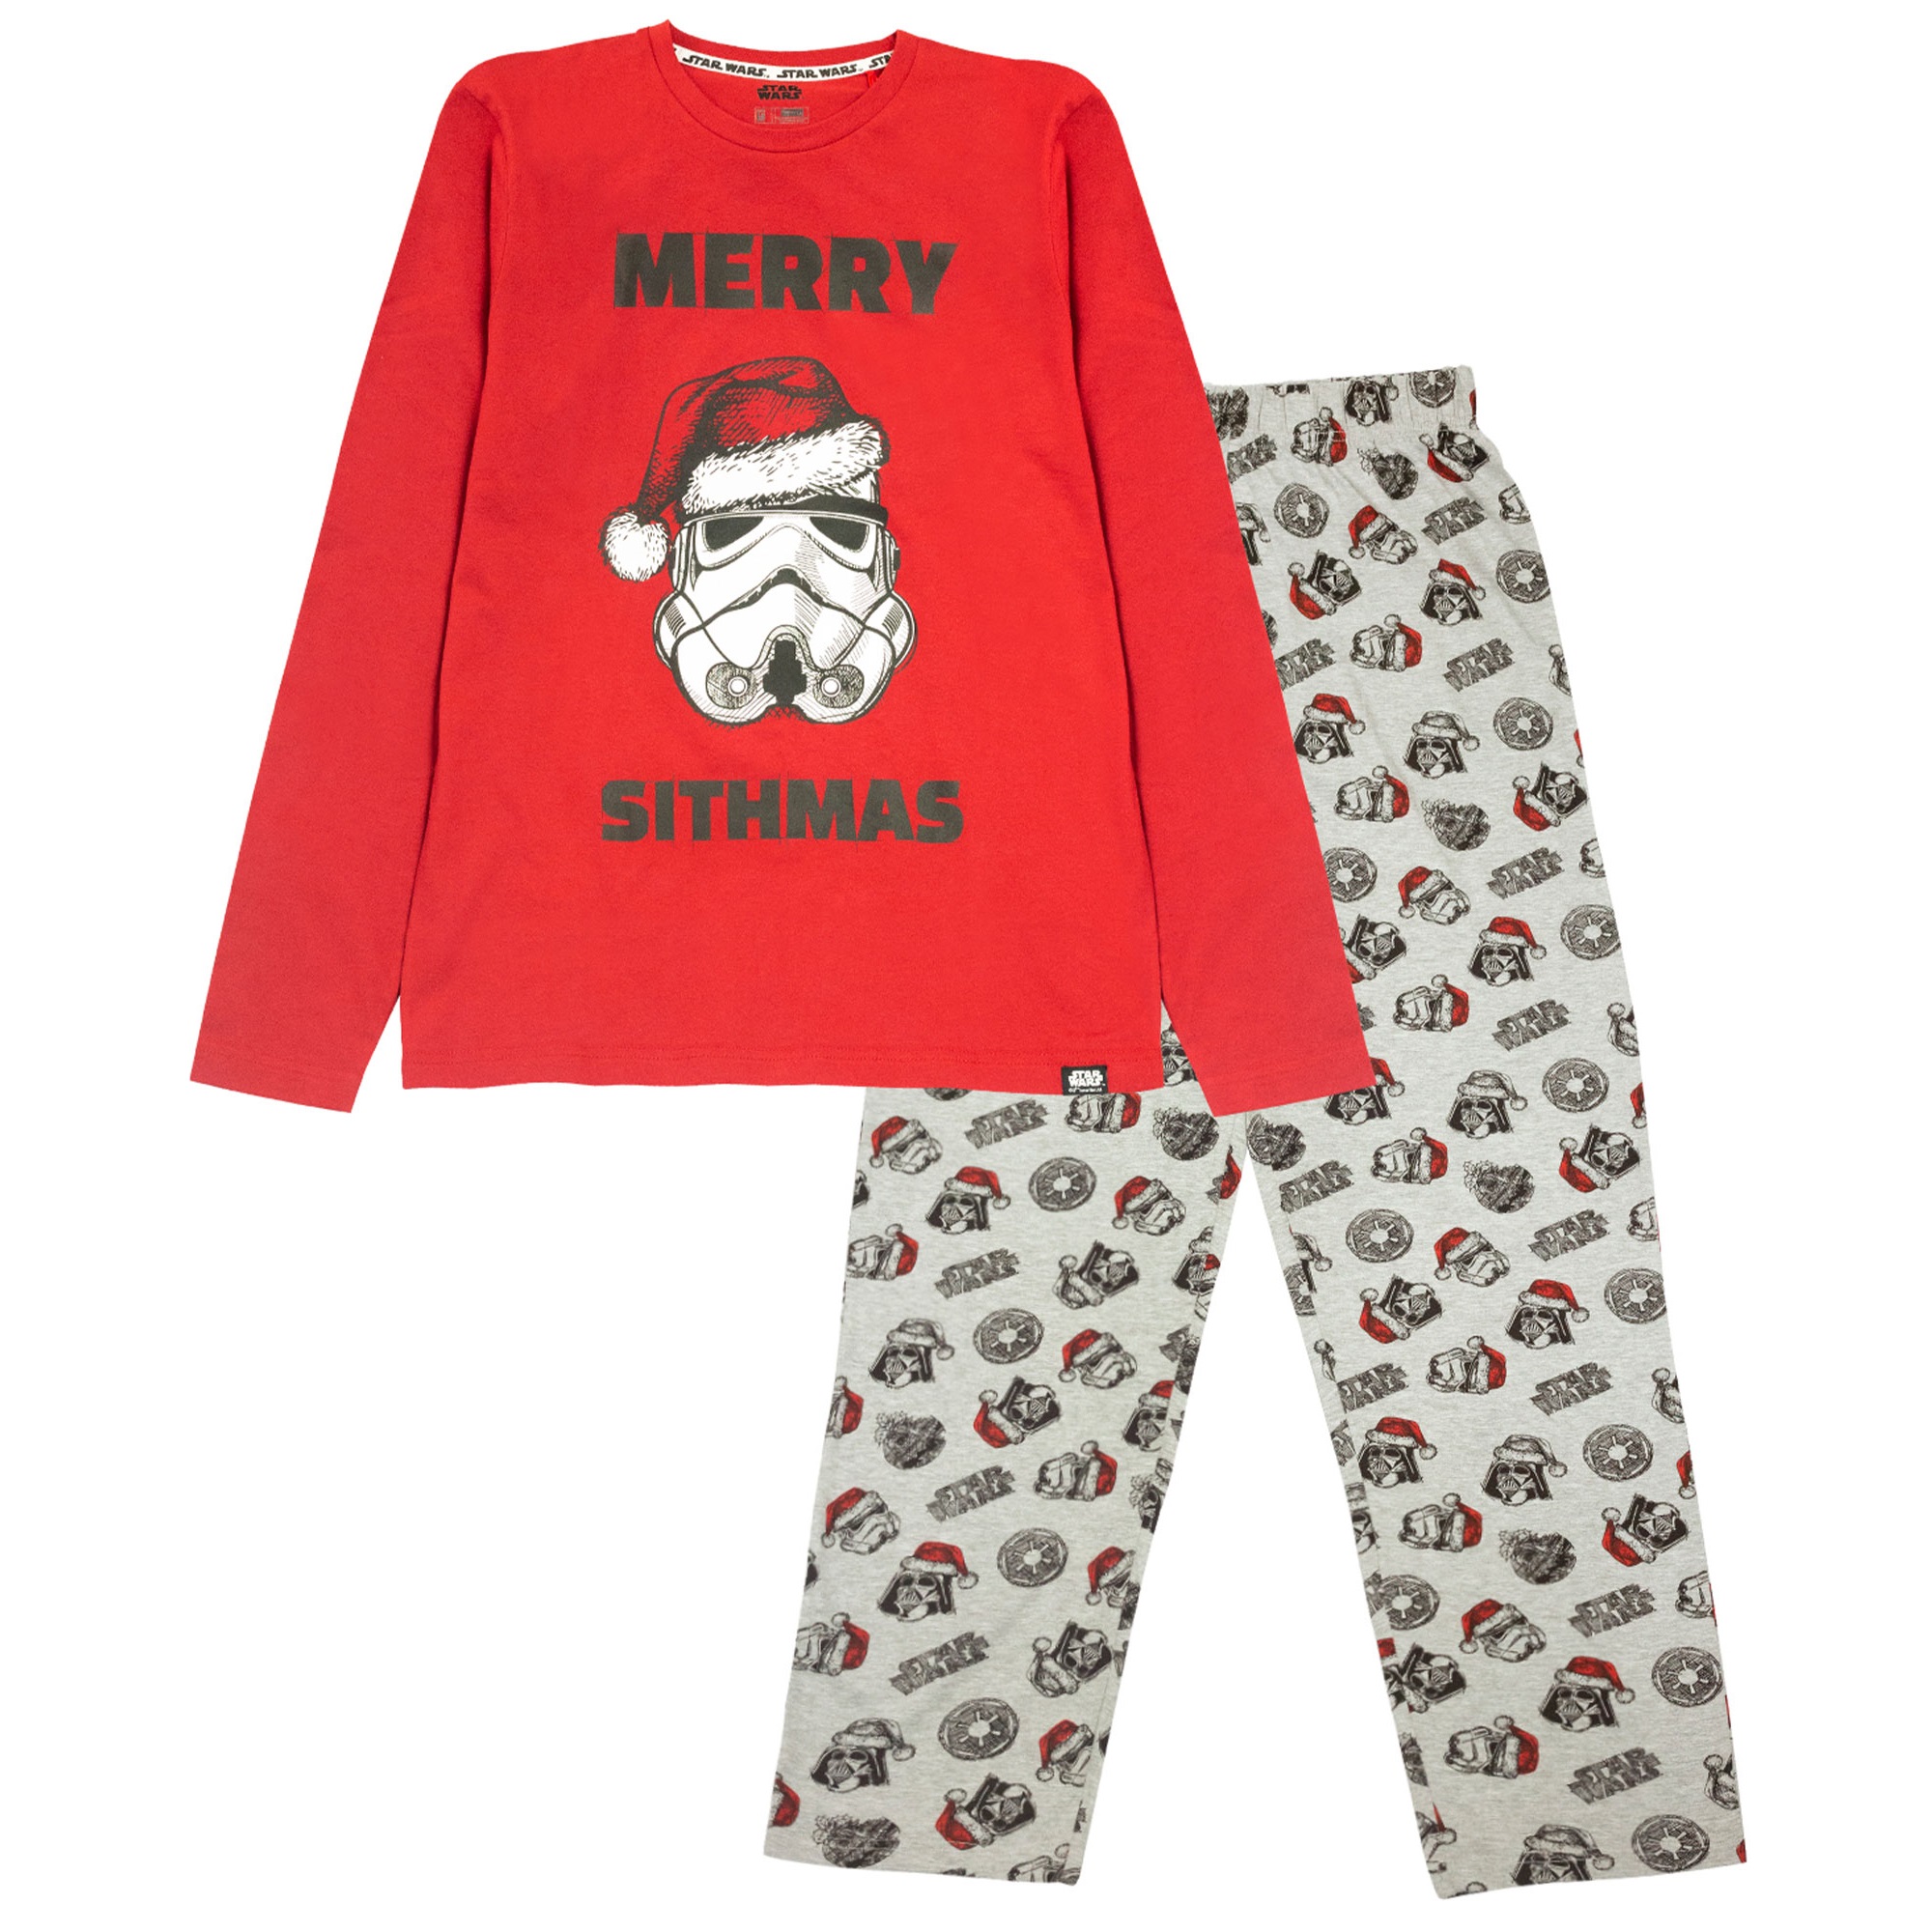 STAR WARS  Herren Pyjama/Schlafanzug Shorty  100%Baumwolle    S    M   L   XL 